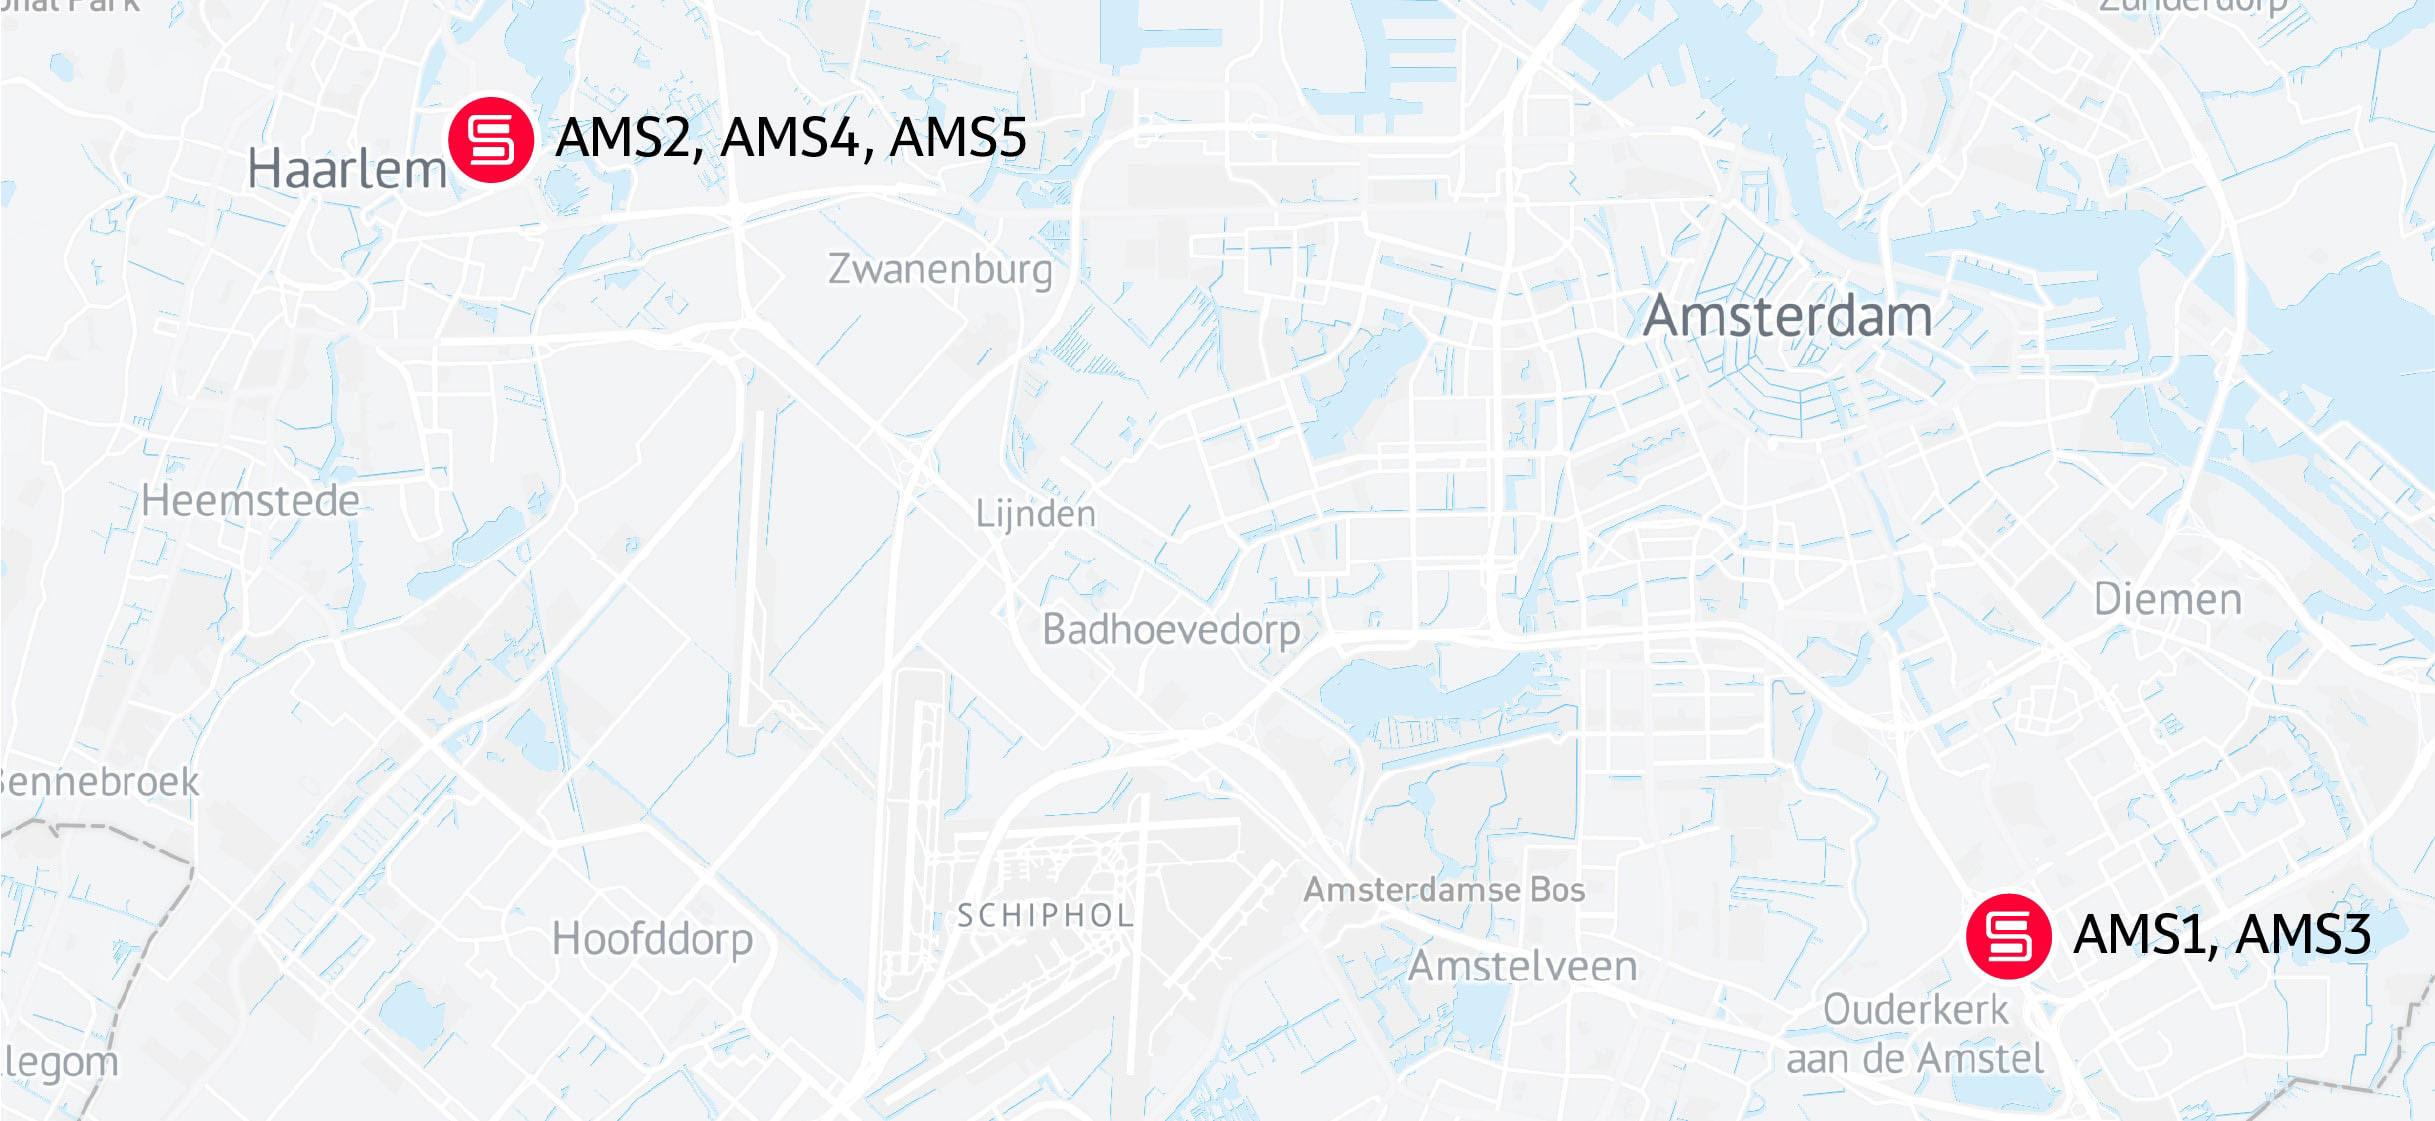 Servers.com Amsterdam data centers map